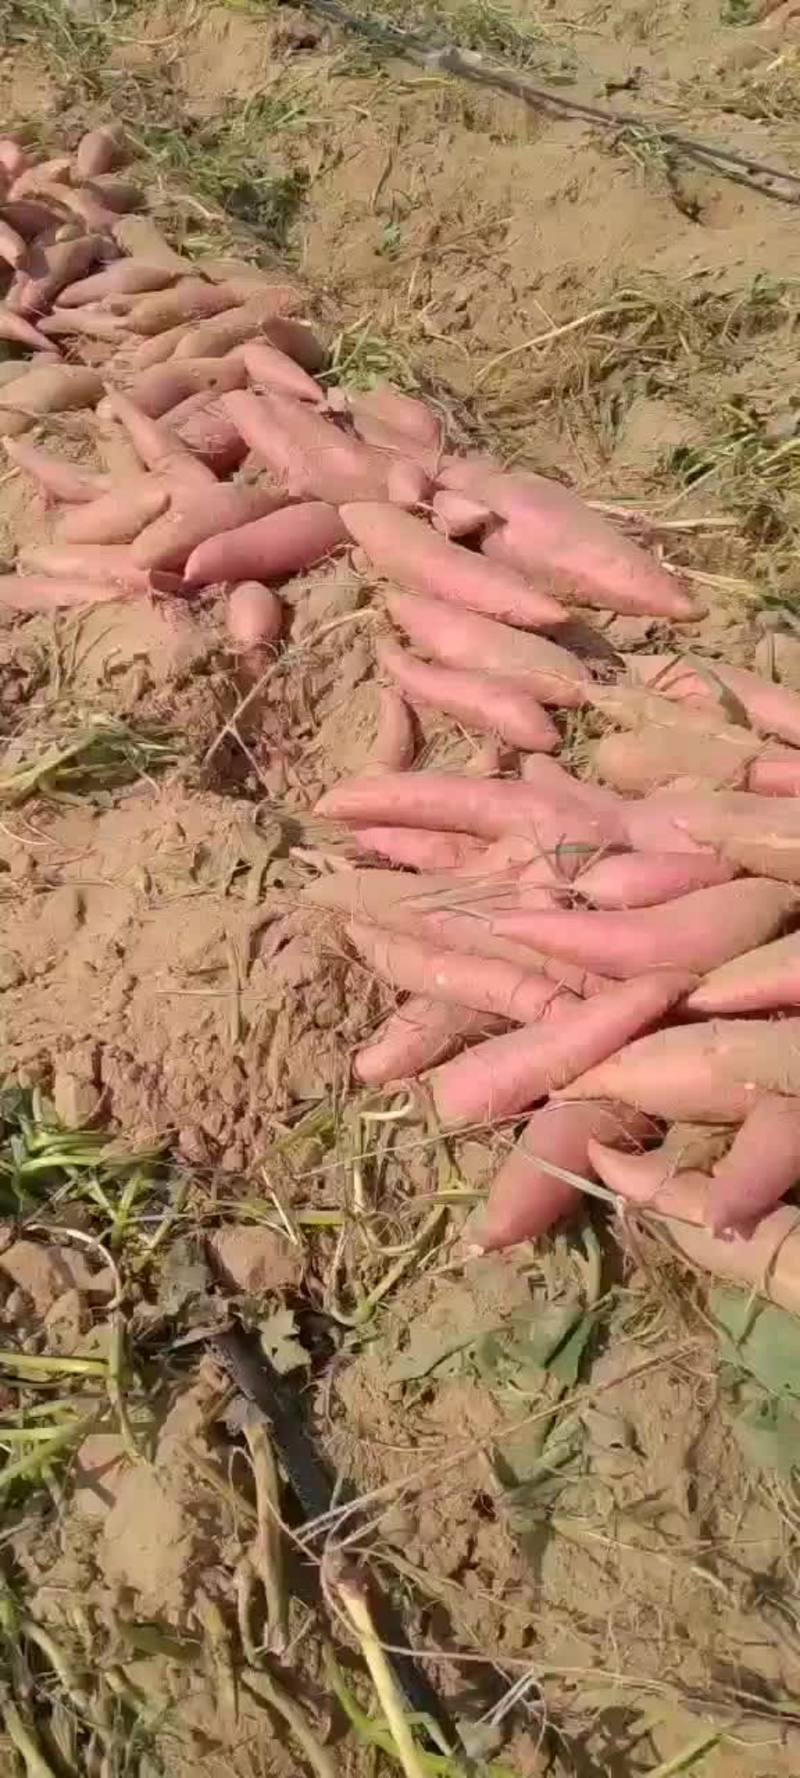 西瓜红红薯纯沙地条形好口感香甜，望电商批发商前来选购，